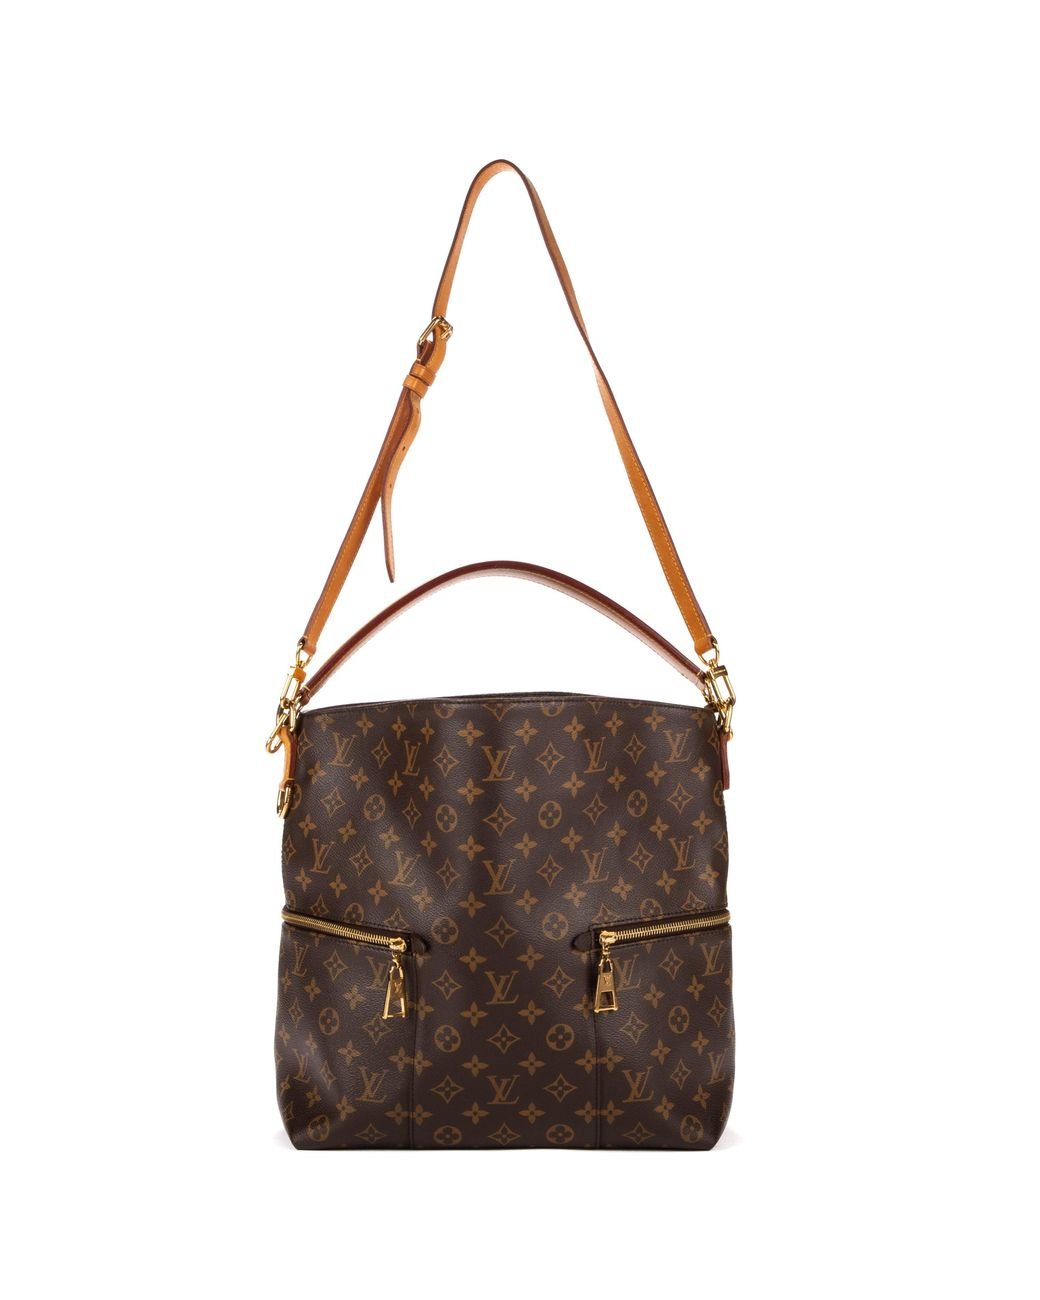 Louis Vuitton Melie Everyday Bag